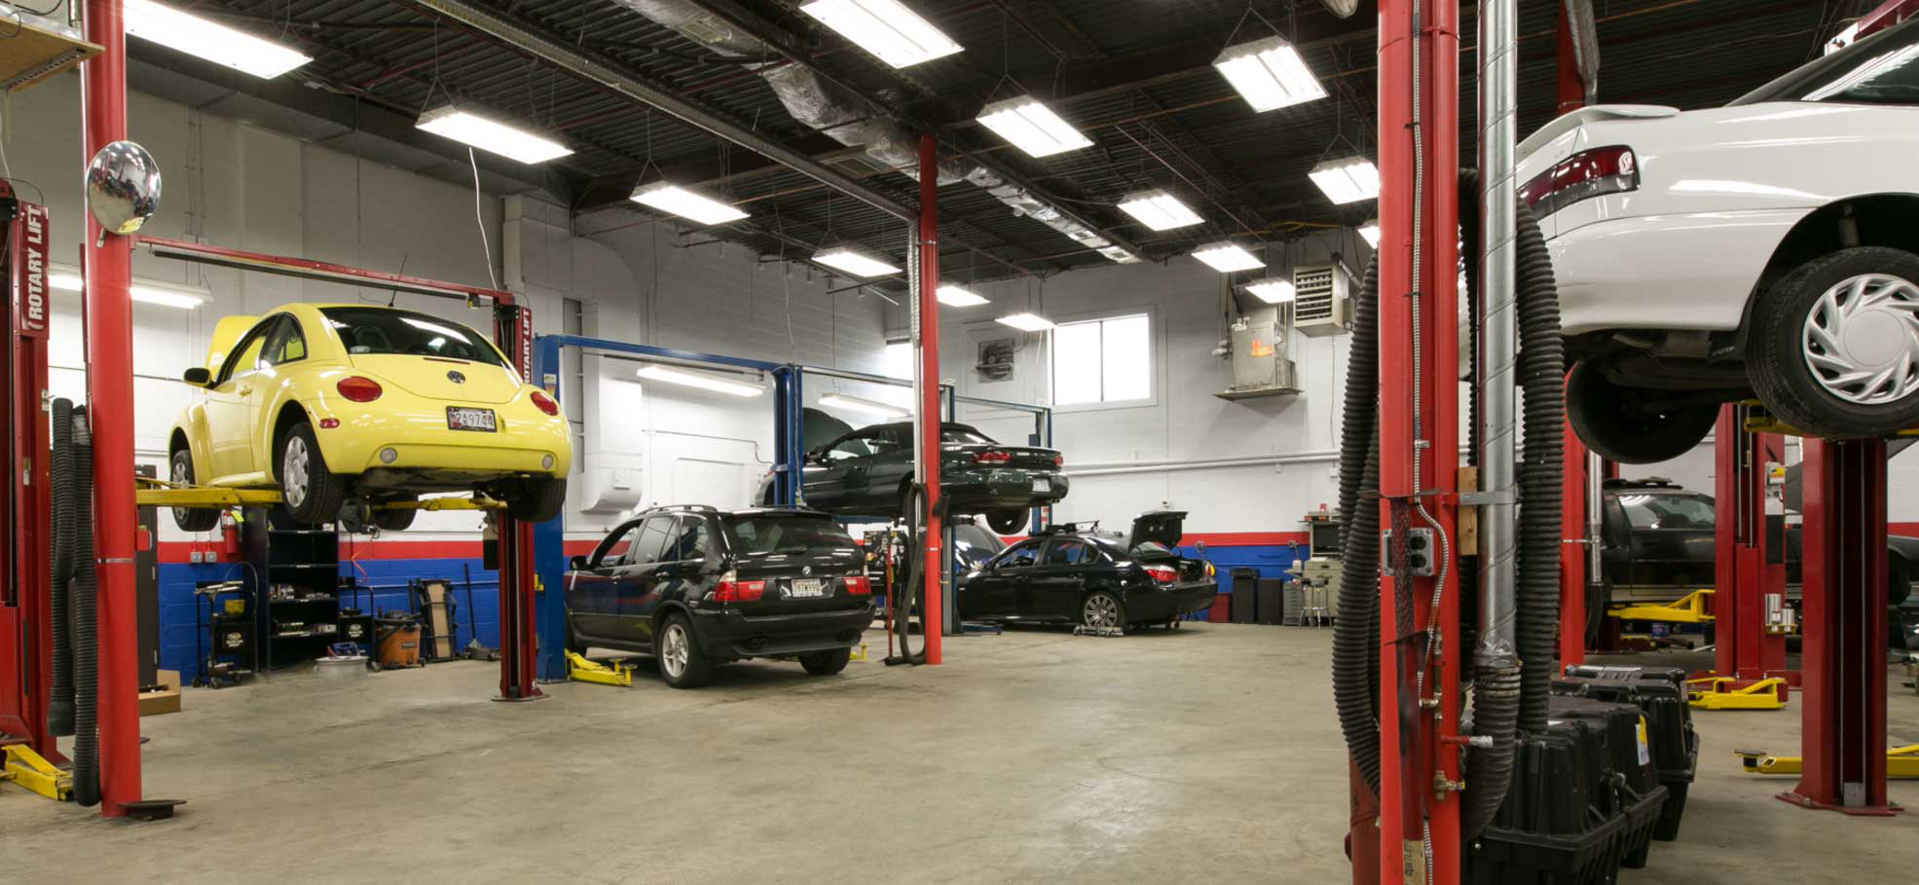 How to Choose Auto Repair Shops Near Me in Vista - AutoRepairShopsNearMeVista